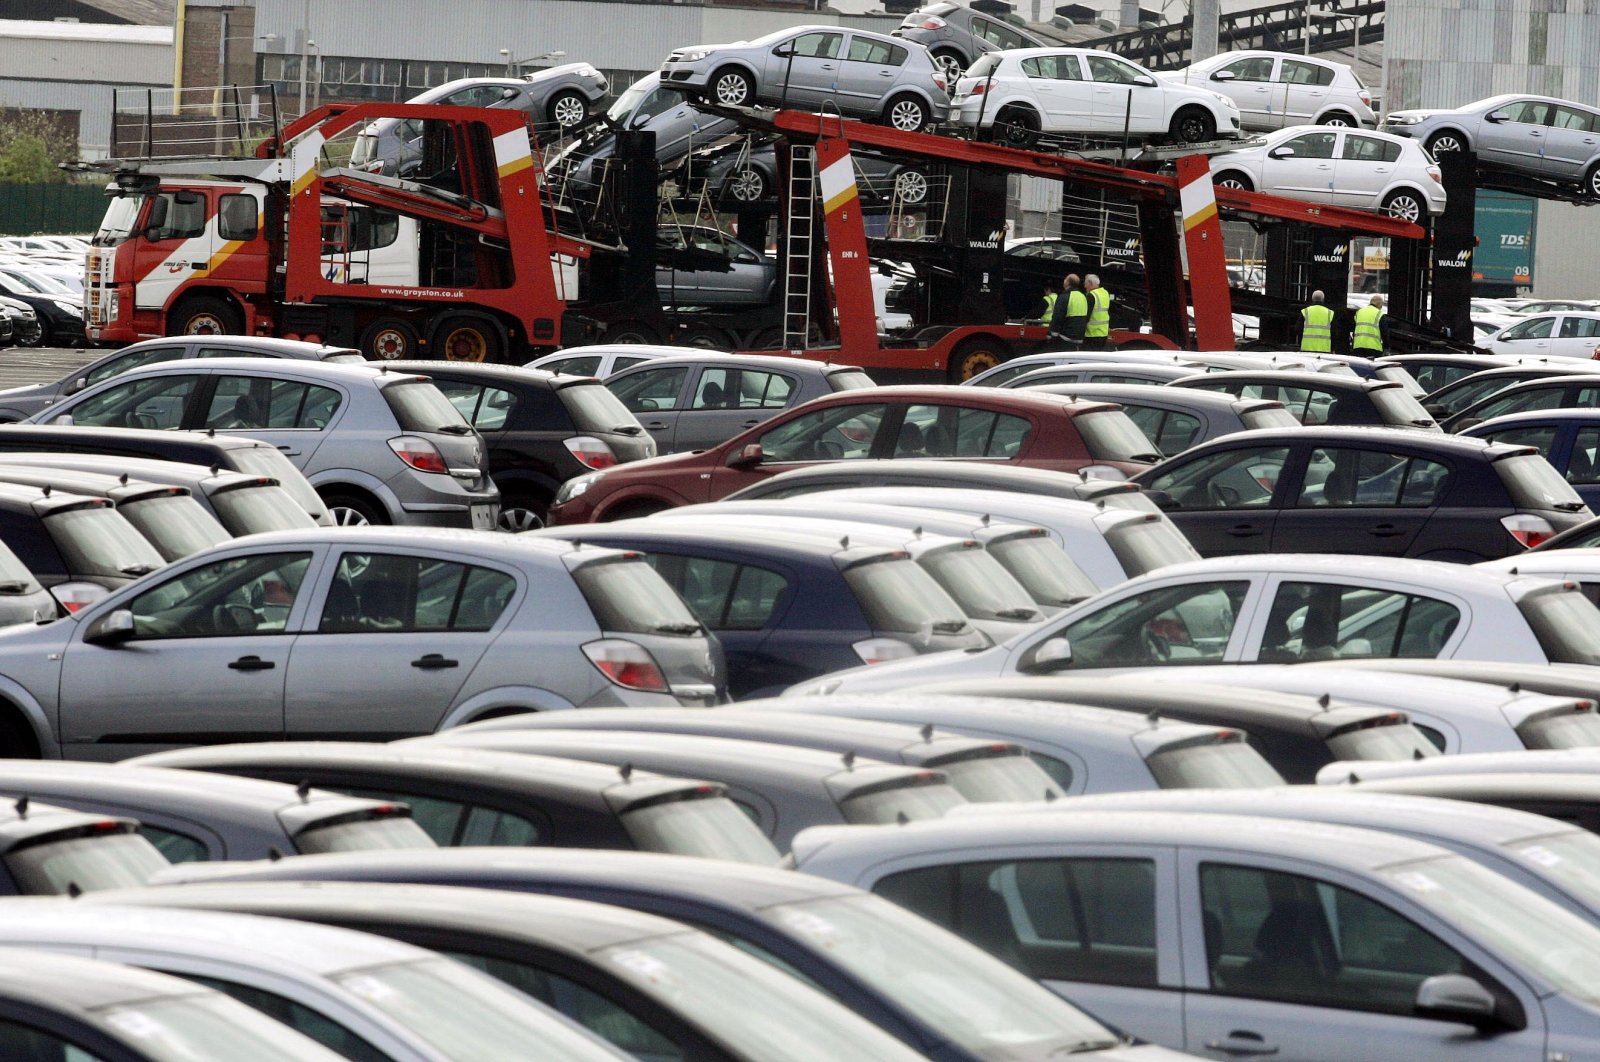 Penjualan mobil di Eropa terendah sejak 1996 setelah penurunan 12 bulan